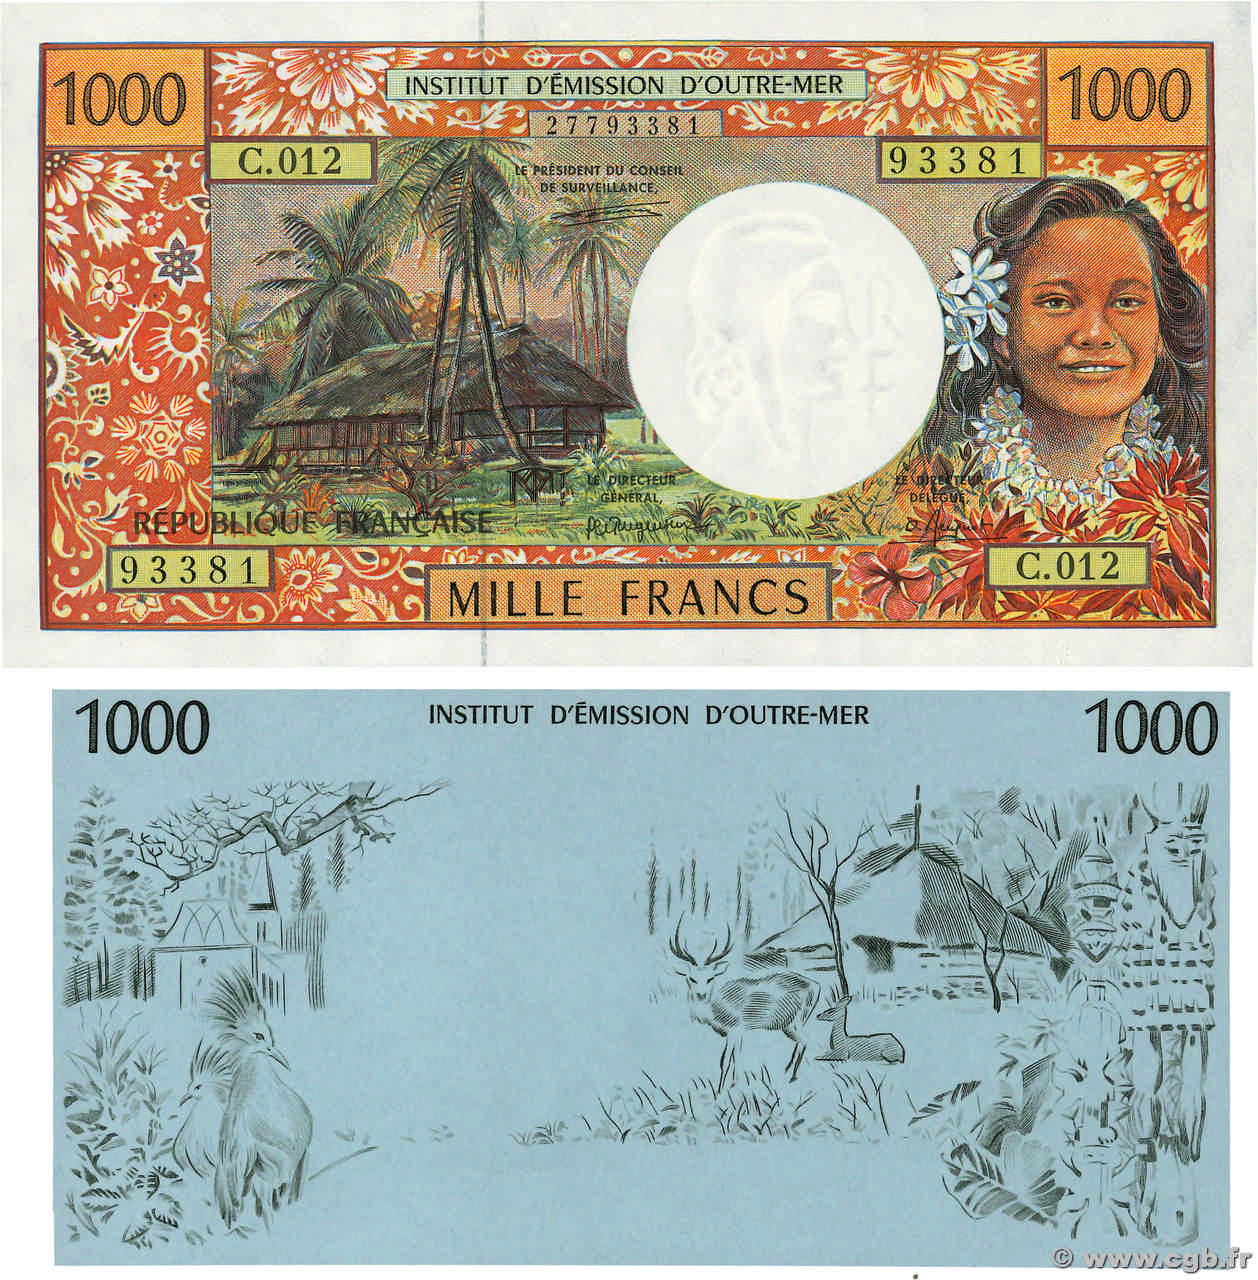 1000 Francs Lot FRENCH PACIFIC TERRITORIES  1995 P.02a et P.02E SC+